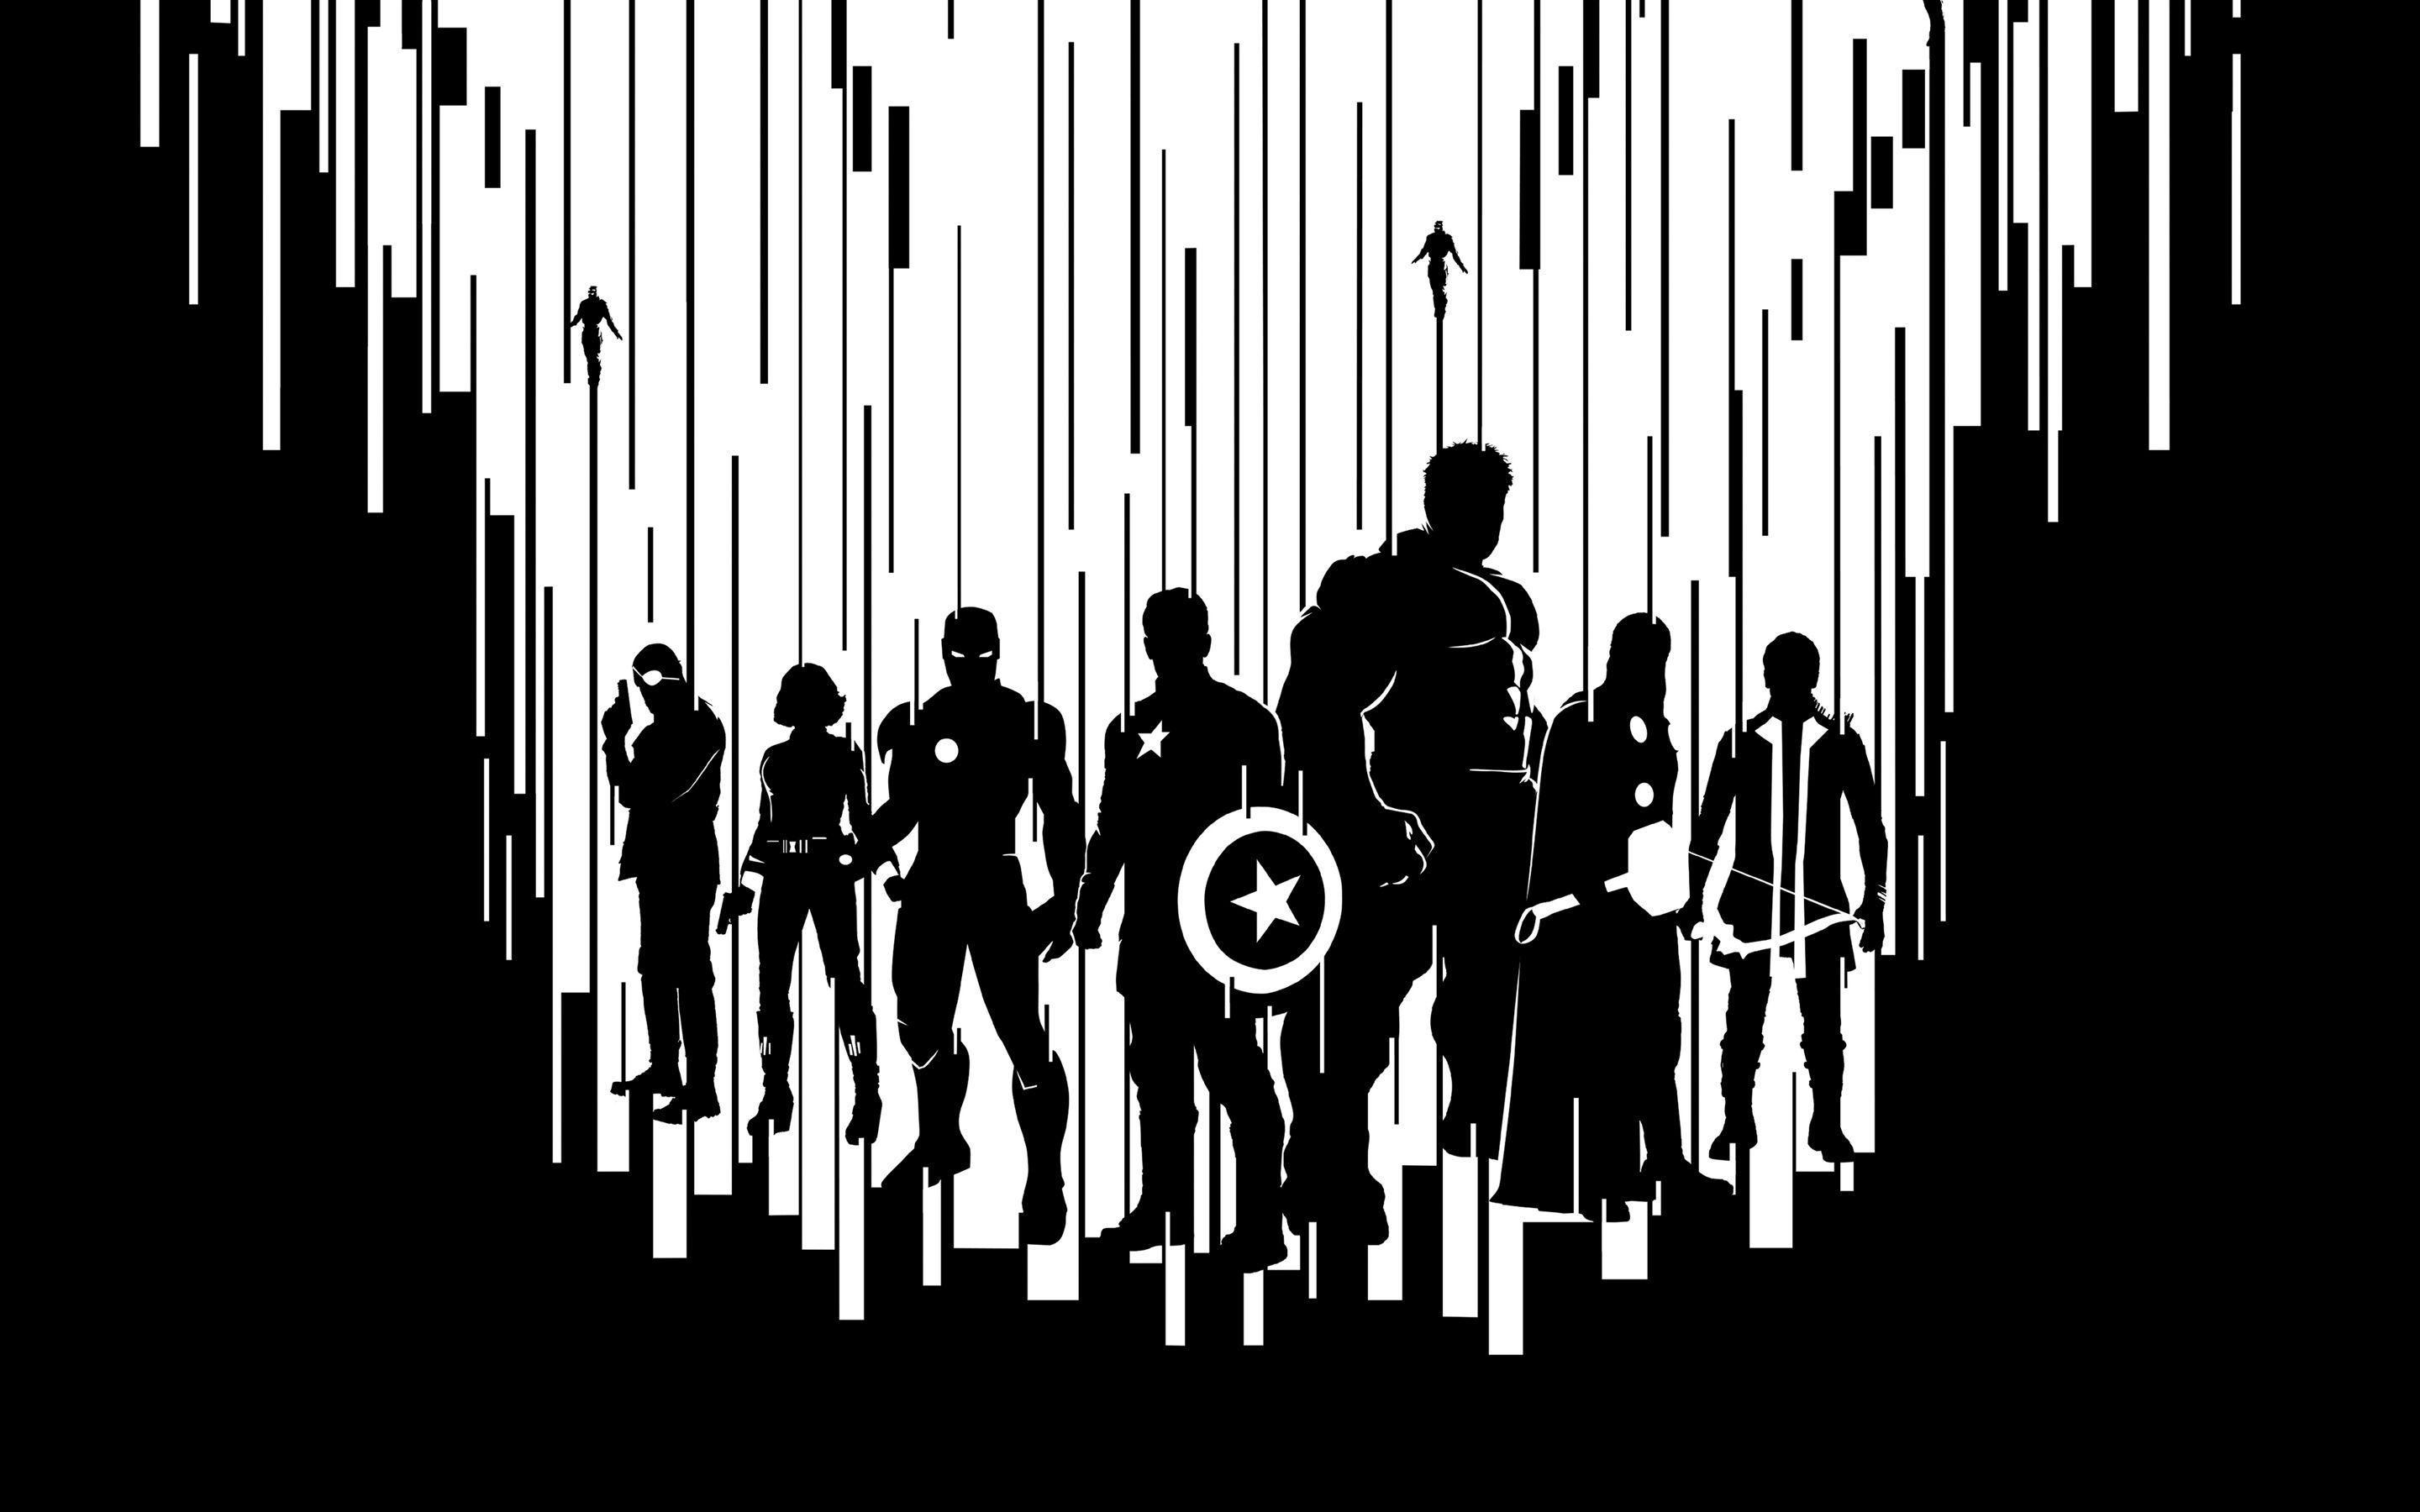 Black Avengers Wallpaper Free Black Avengers Background